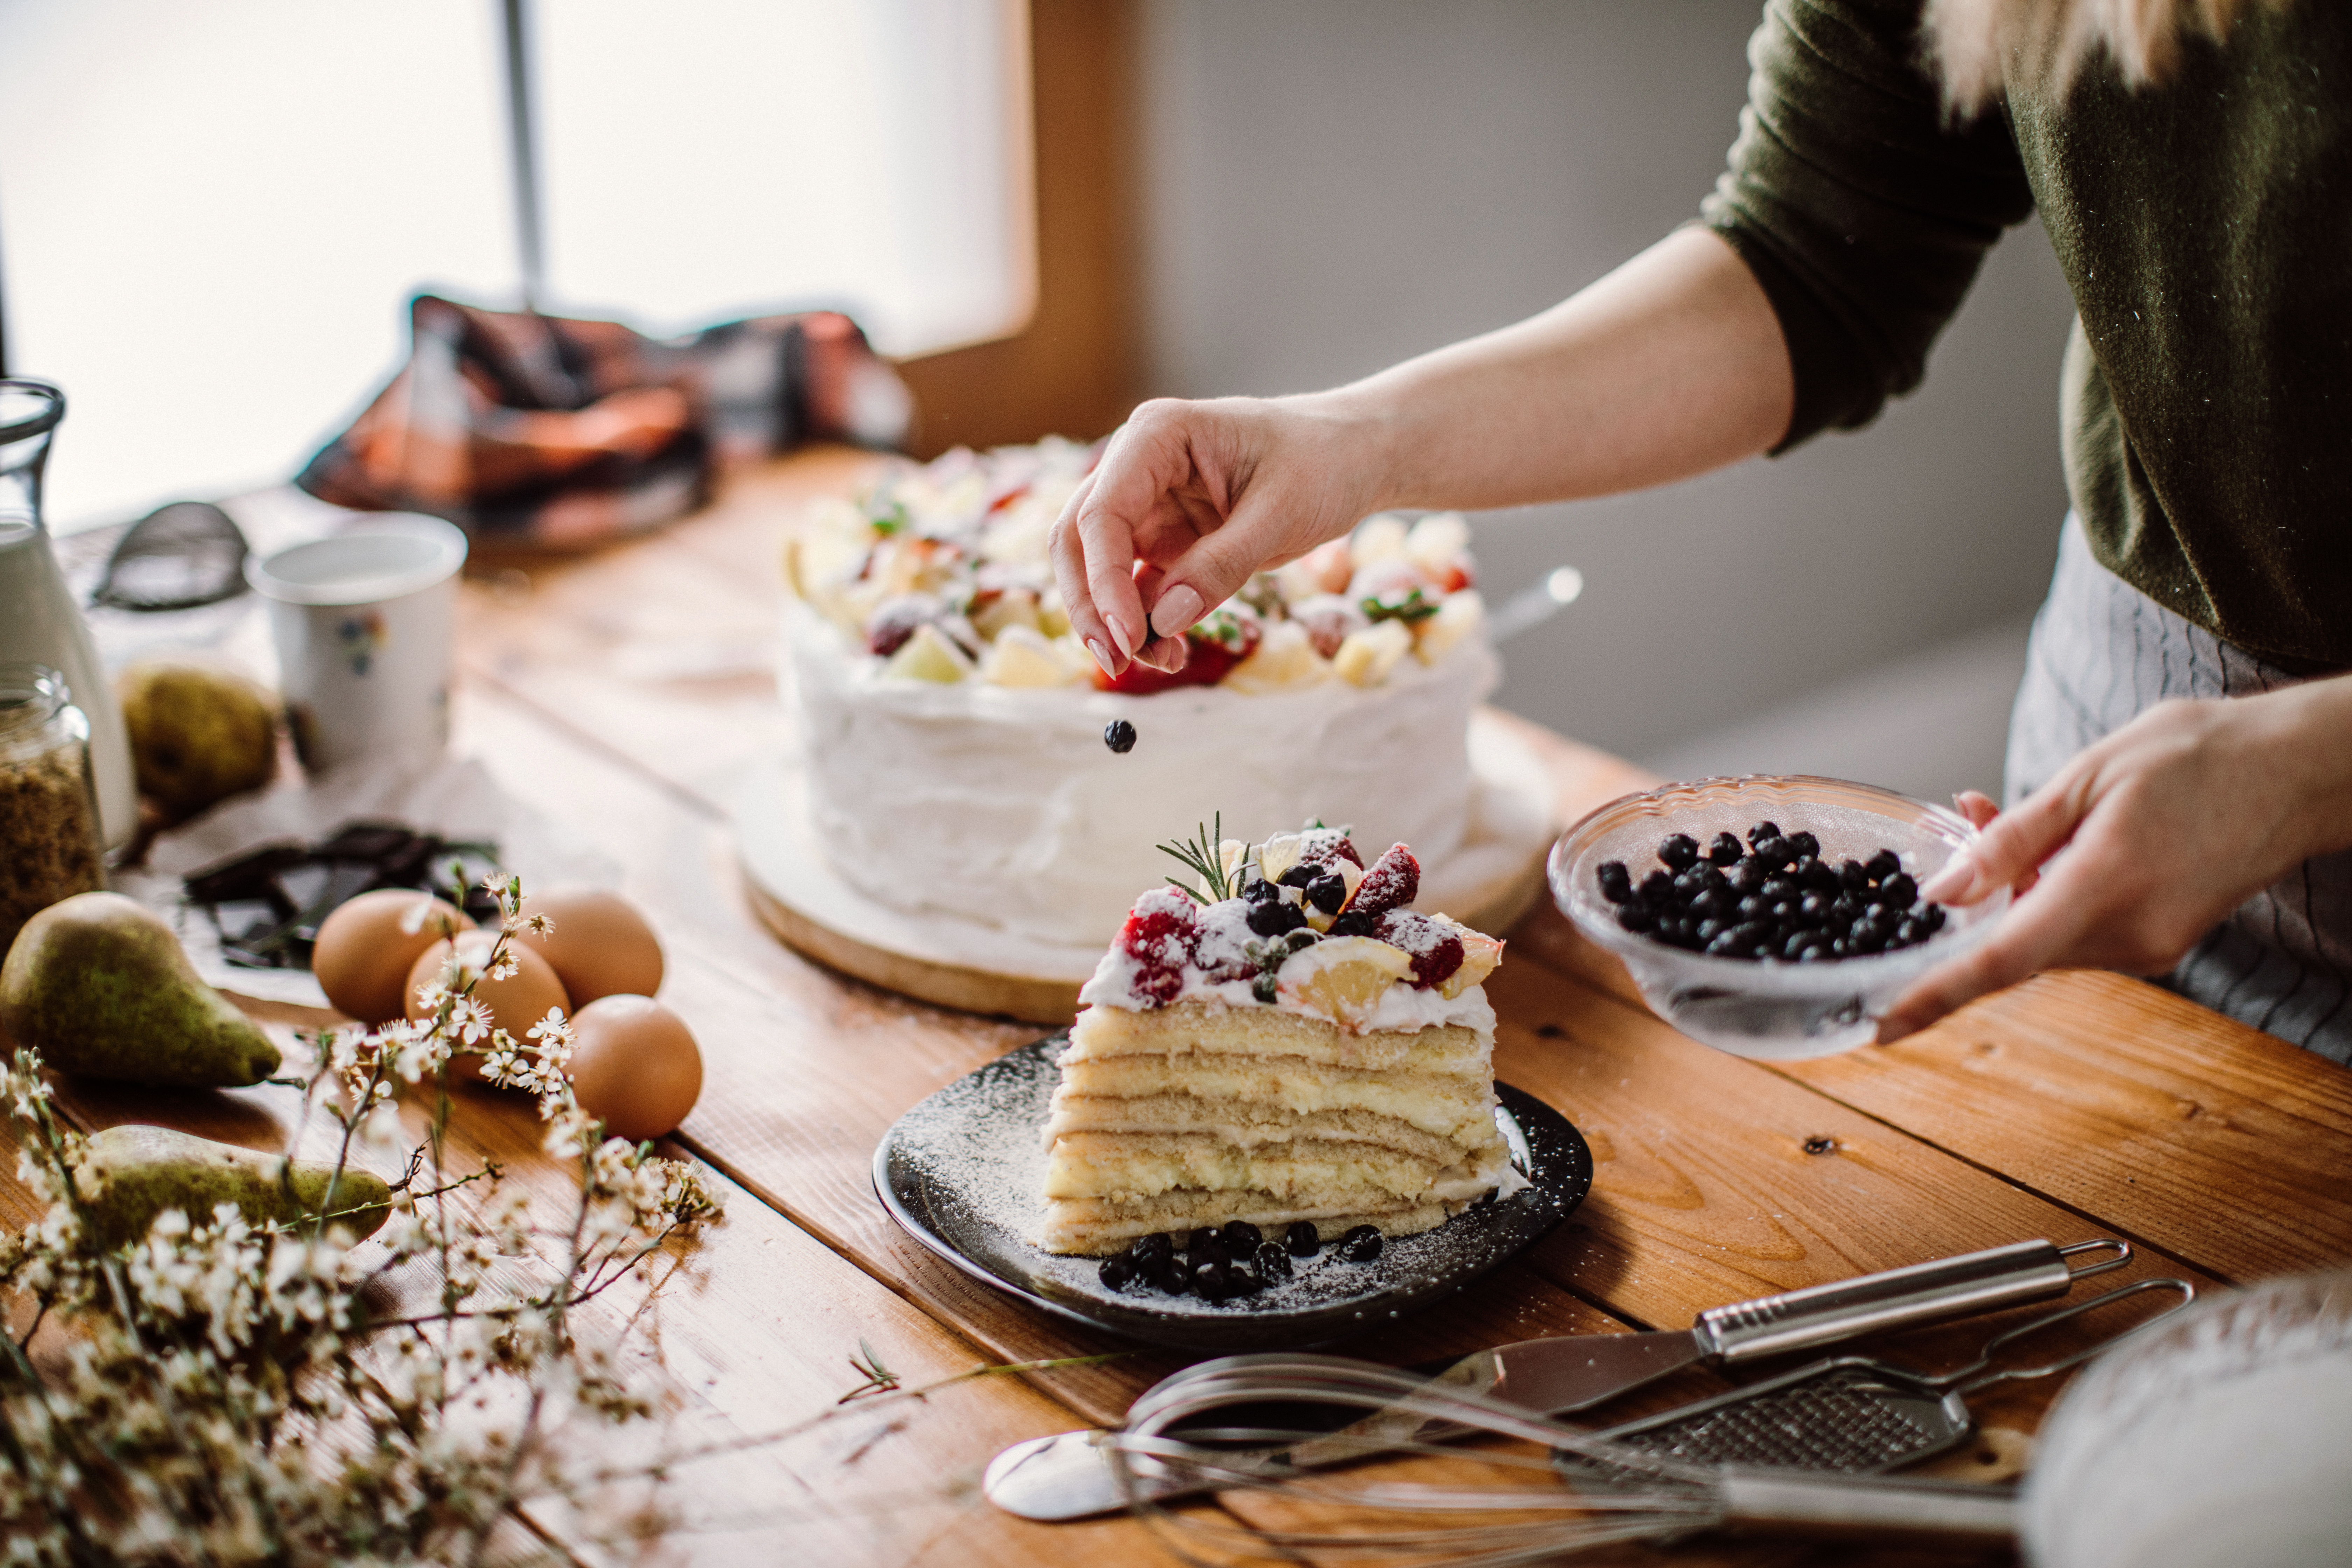 Une femme coupe un morceau de gâteau pour la personne qui fête son anniversaire | Source : Getty Images